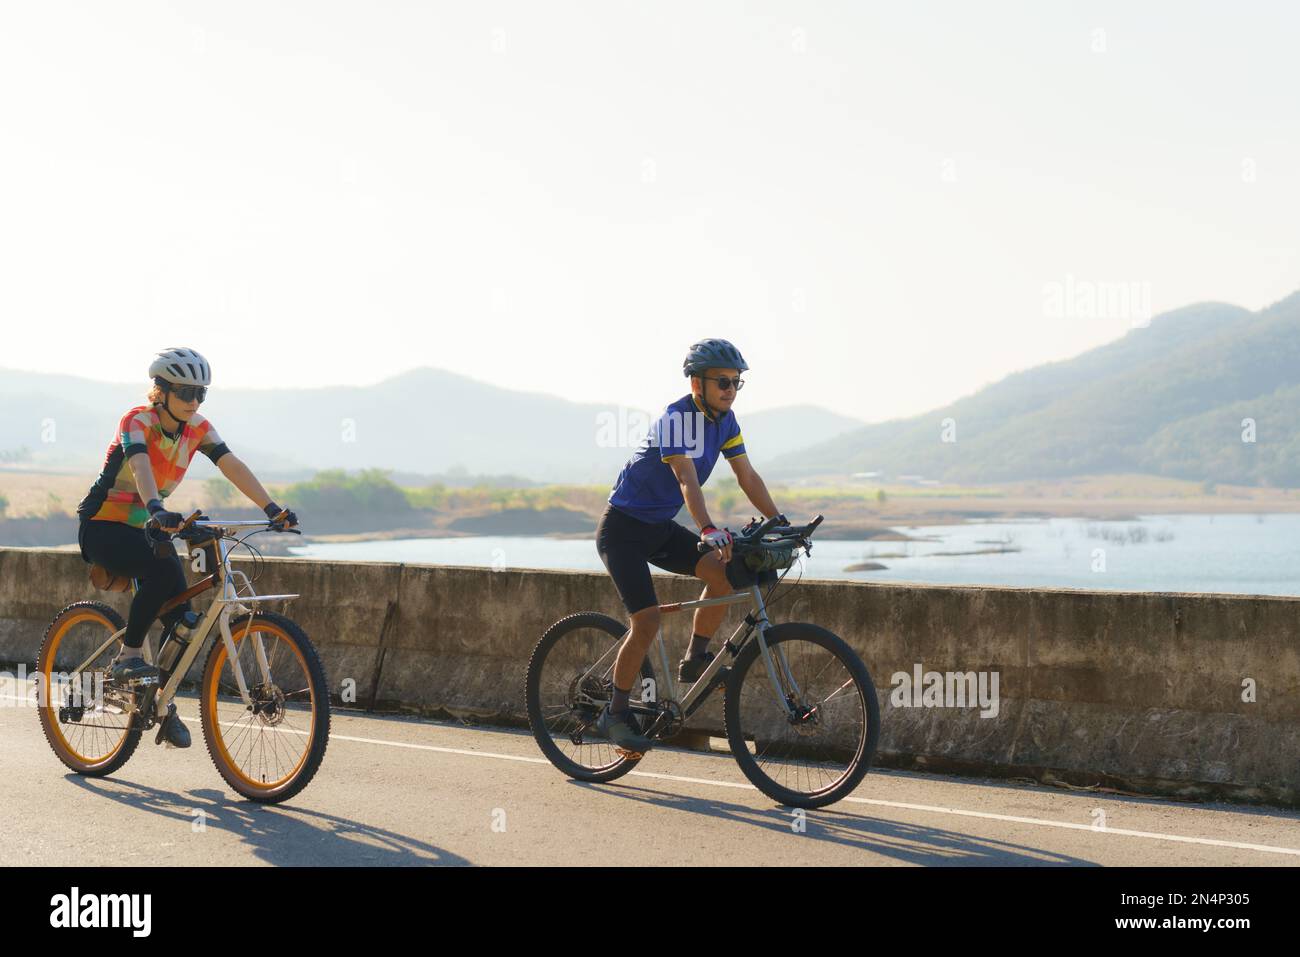 Un couple cycliste asiatique se baladant ensemble pour faire de l'exercice autour du lac le matin avec une belle vue sur la montagne en arrière-plan. Banque D'Images